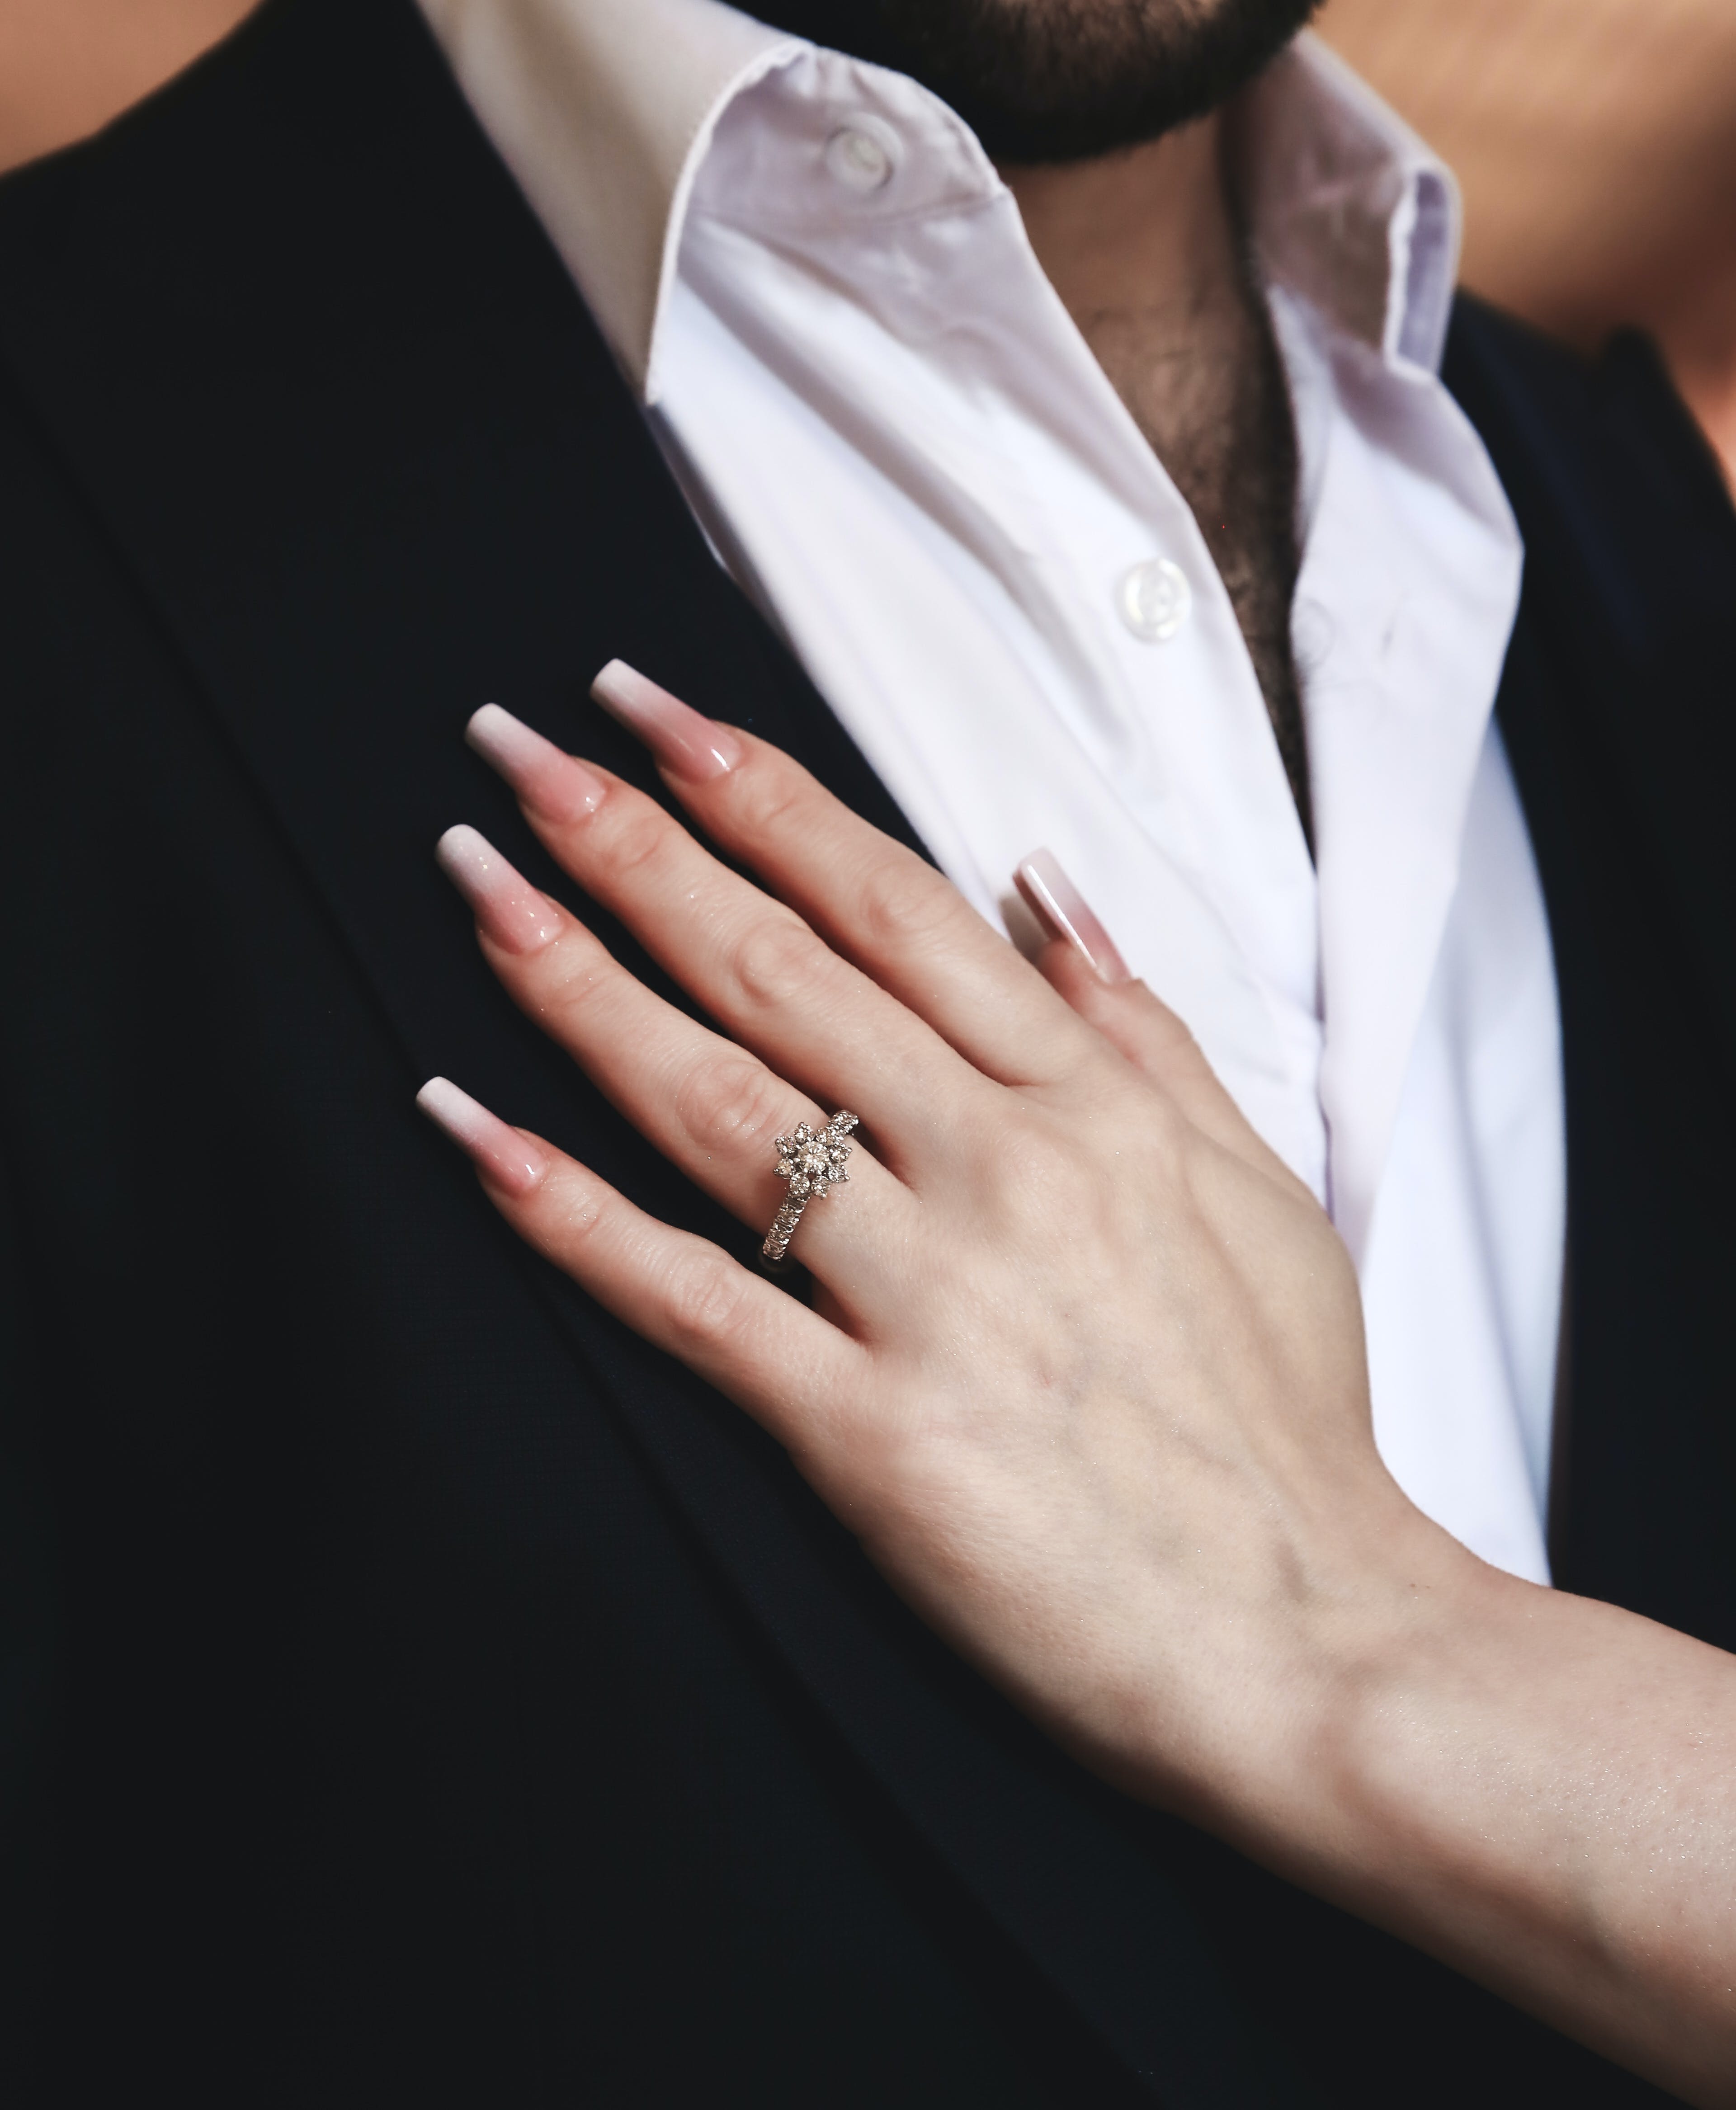 Une femme posant sa main sur la poitrine d'un homme | Source : Pexels